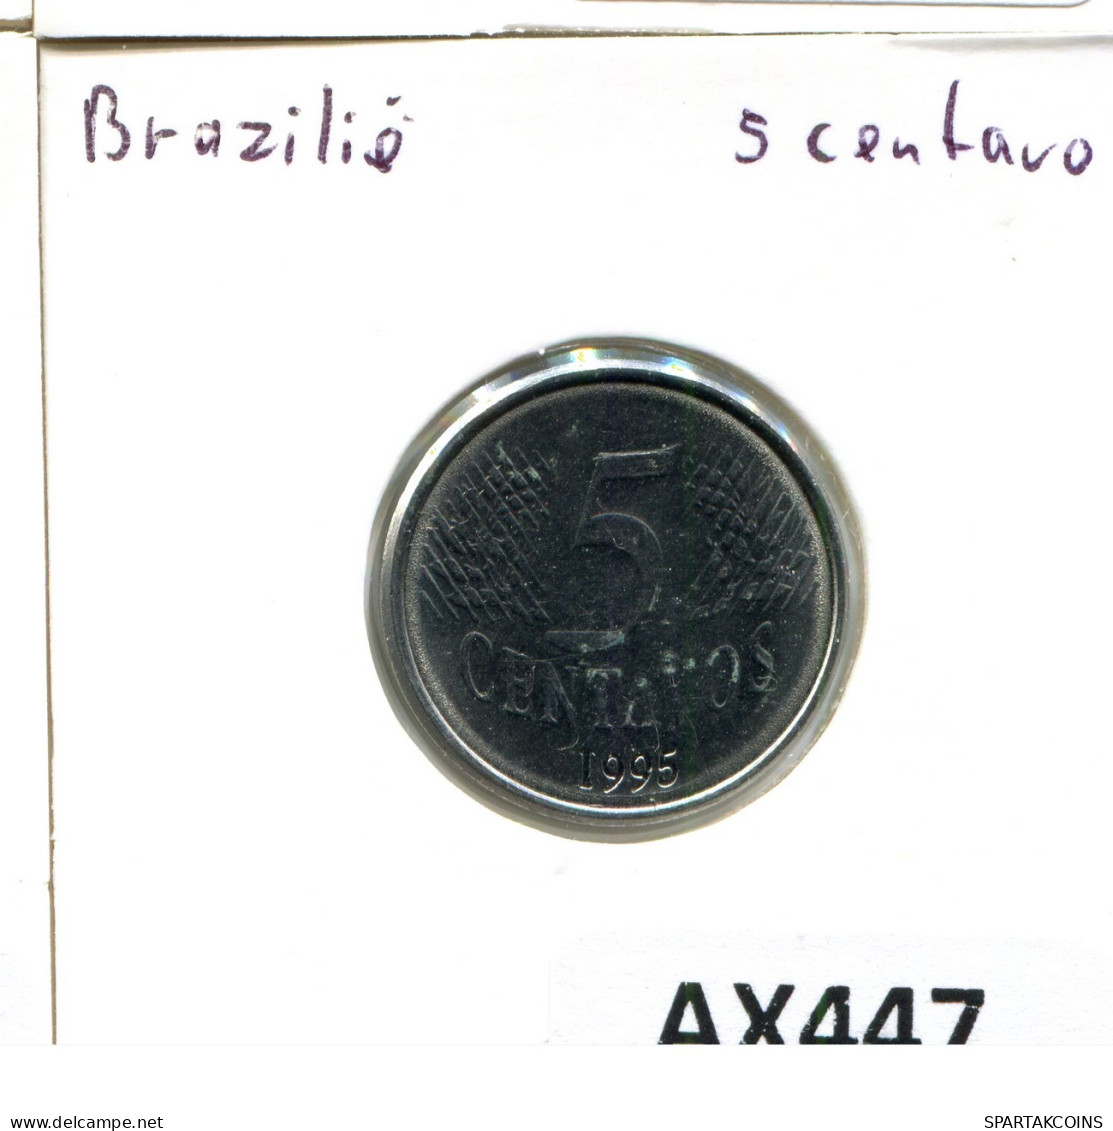 5 CENTAVOS 1995 BBASILIEN BRAZIL Münze #AX447.D.A - Brasilien